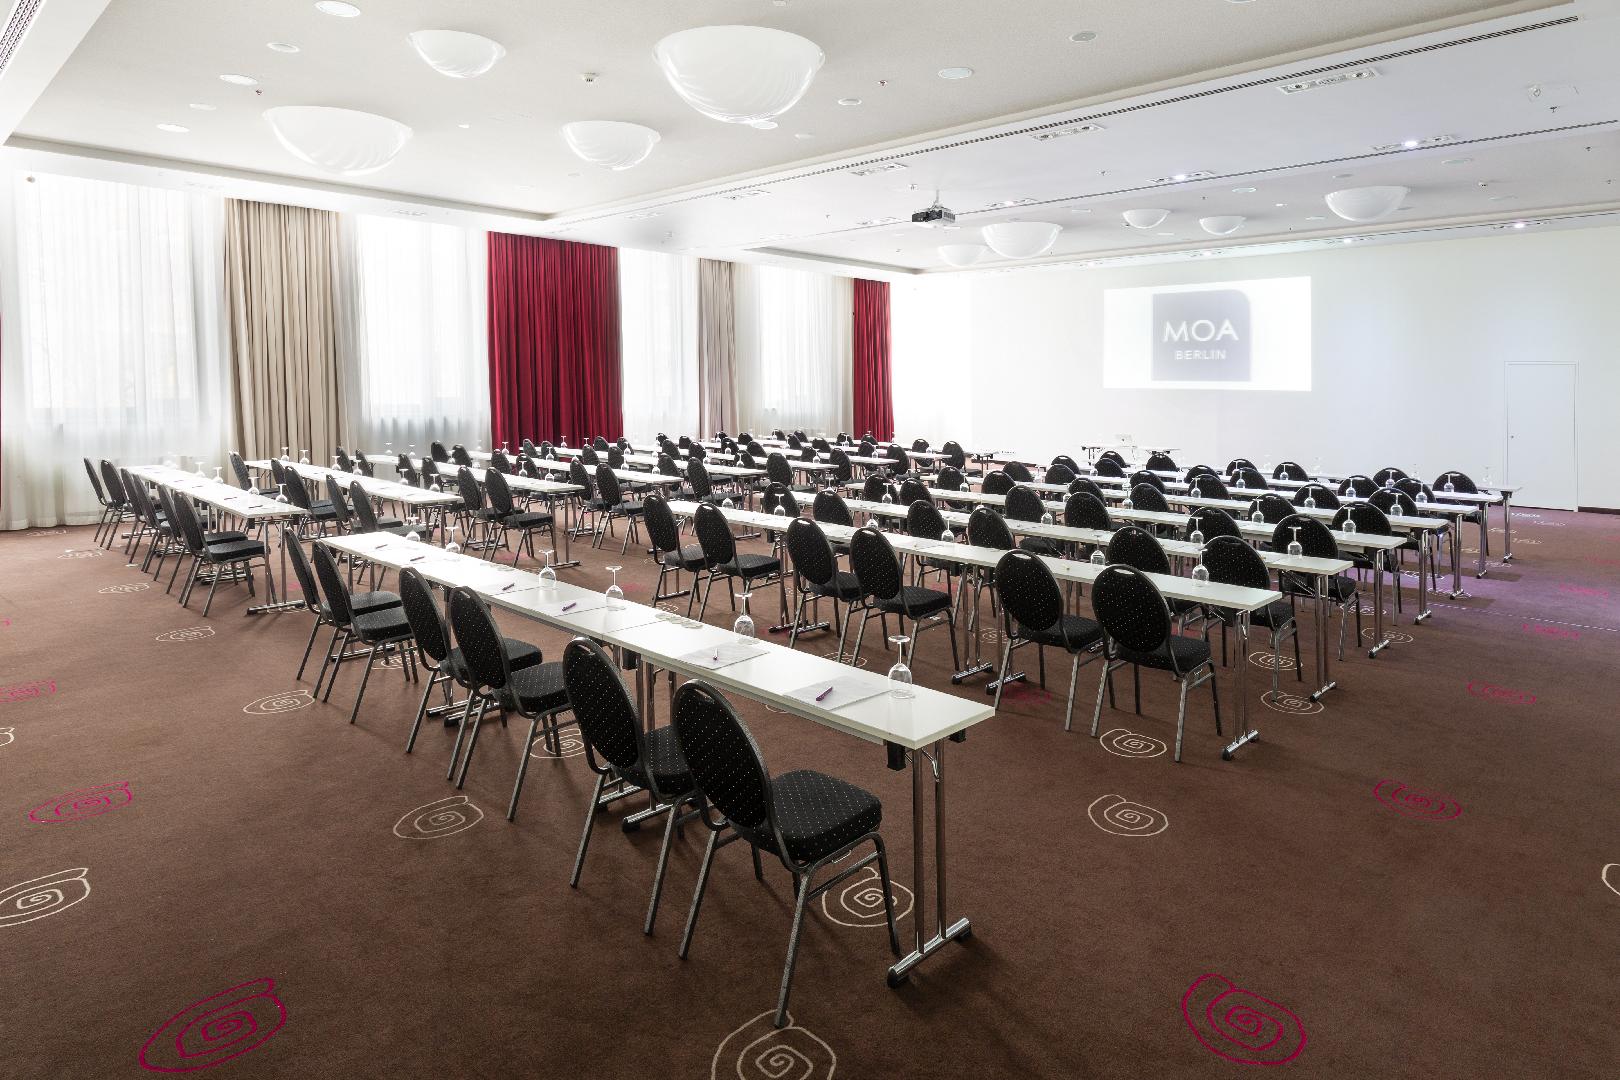 Bild 2 von Convention Hall des Mercure Hotel MOA Berlin I Atrium I 40 Eventspaces über 3 Meeting Etagen I 336 Zimmer